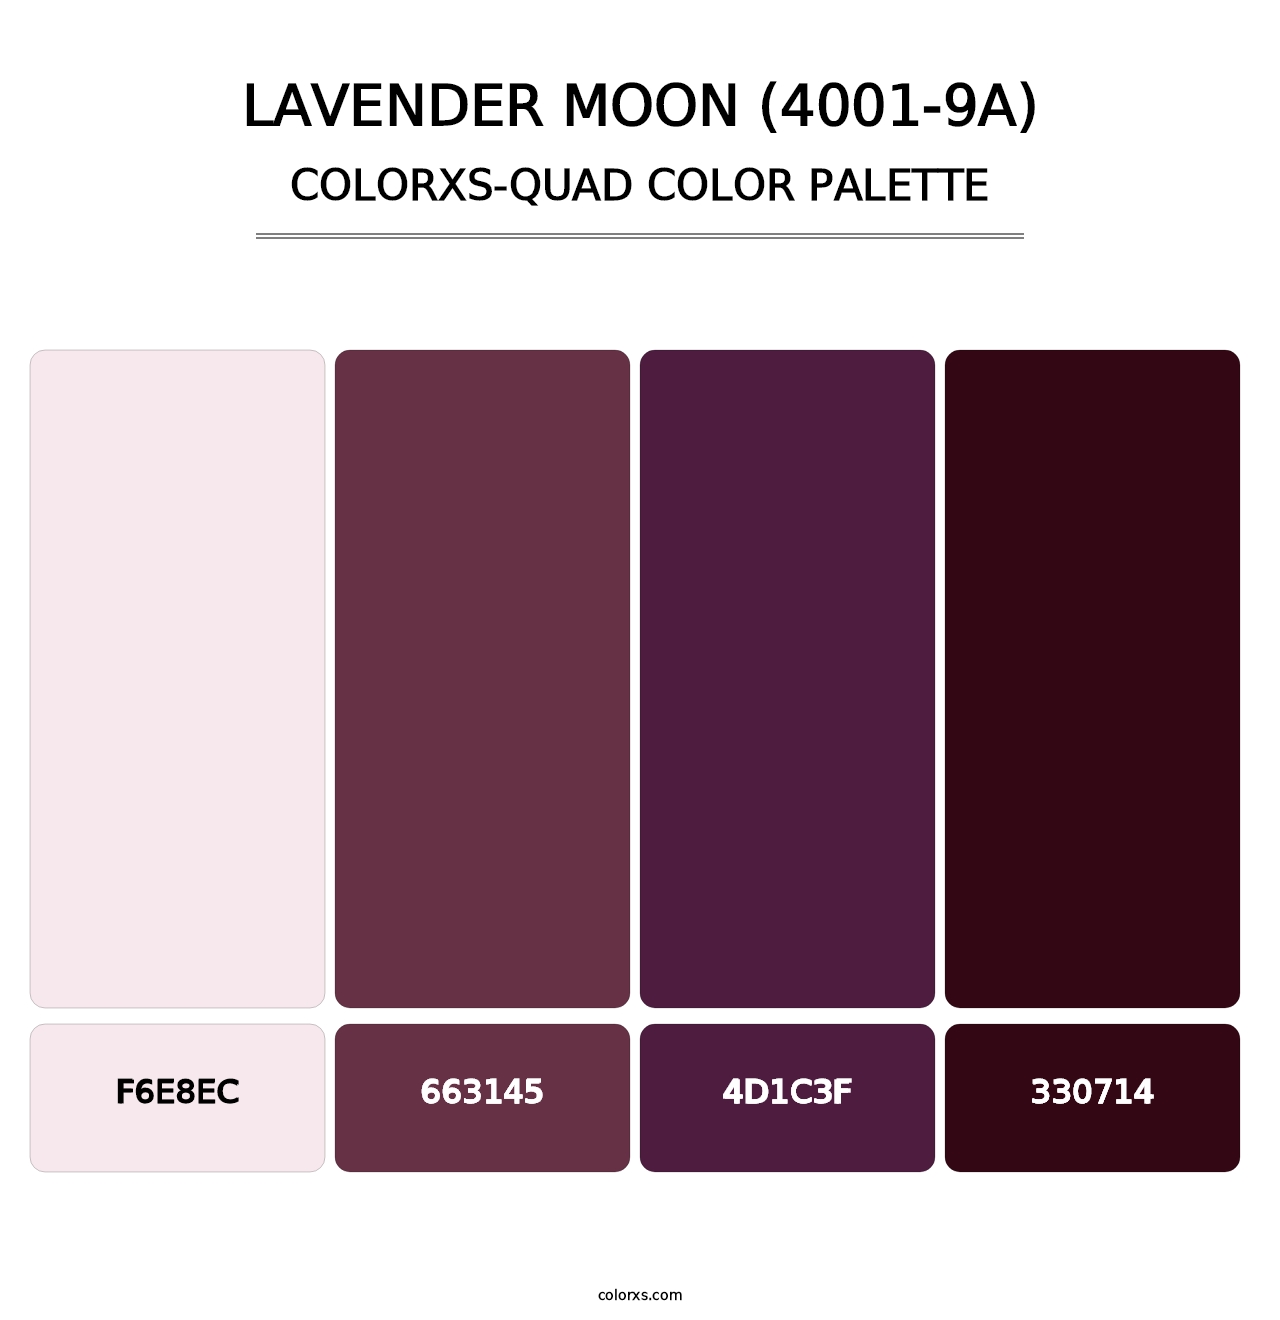 Lavender Moon (4001-9A) - Colorxs Quad Palette